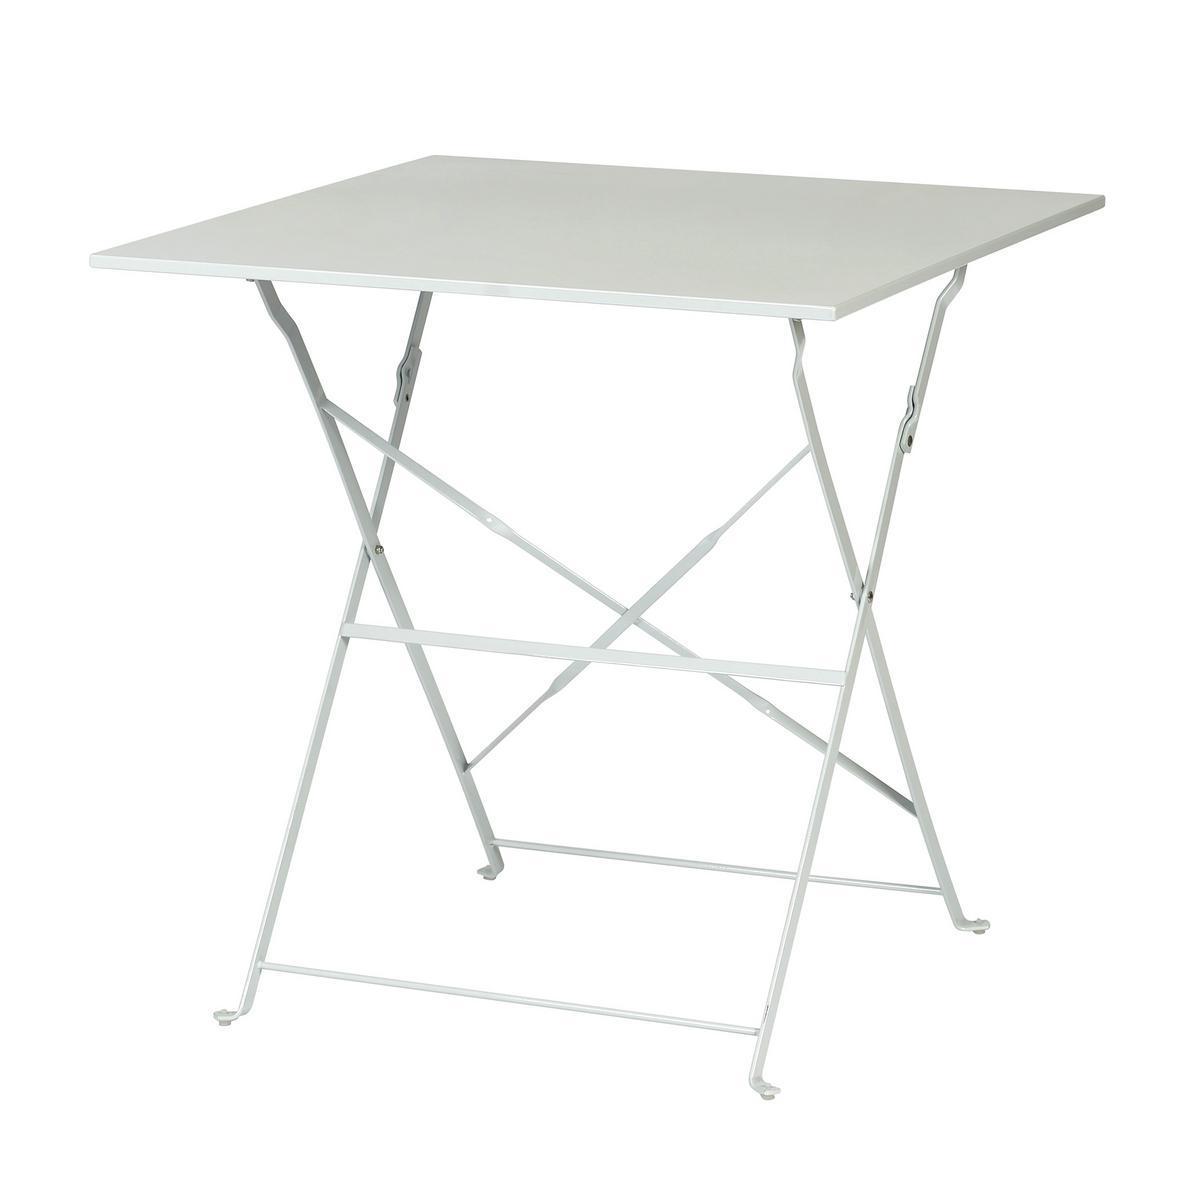 Table pliante JIANIS - Acier - 70 x 70 x H 71 cm - Gris clair